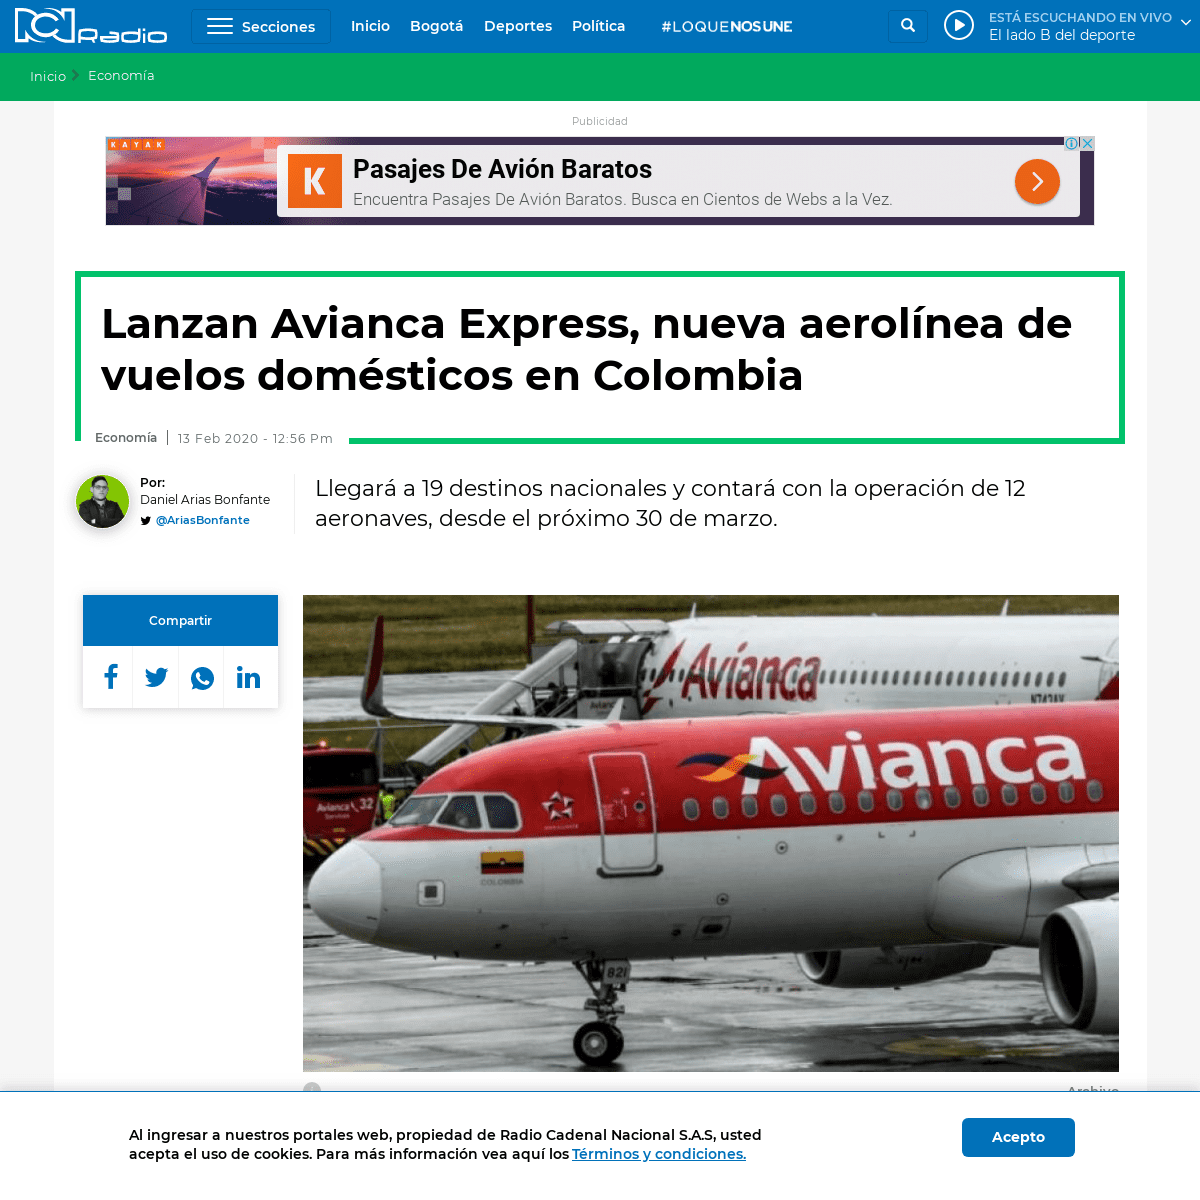 A complete backup of www.rcnradio.com/economia/lanzan-avianca-express-nueva-aerolinea-de-vuelos-domesticos-en-colombia